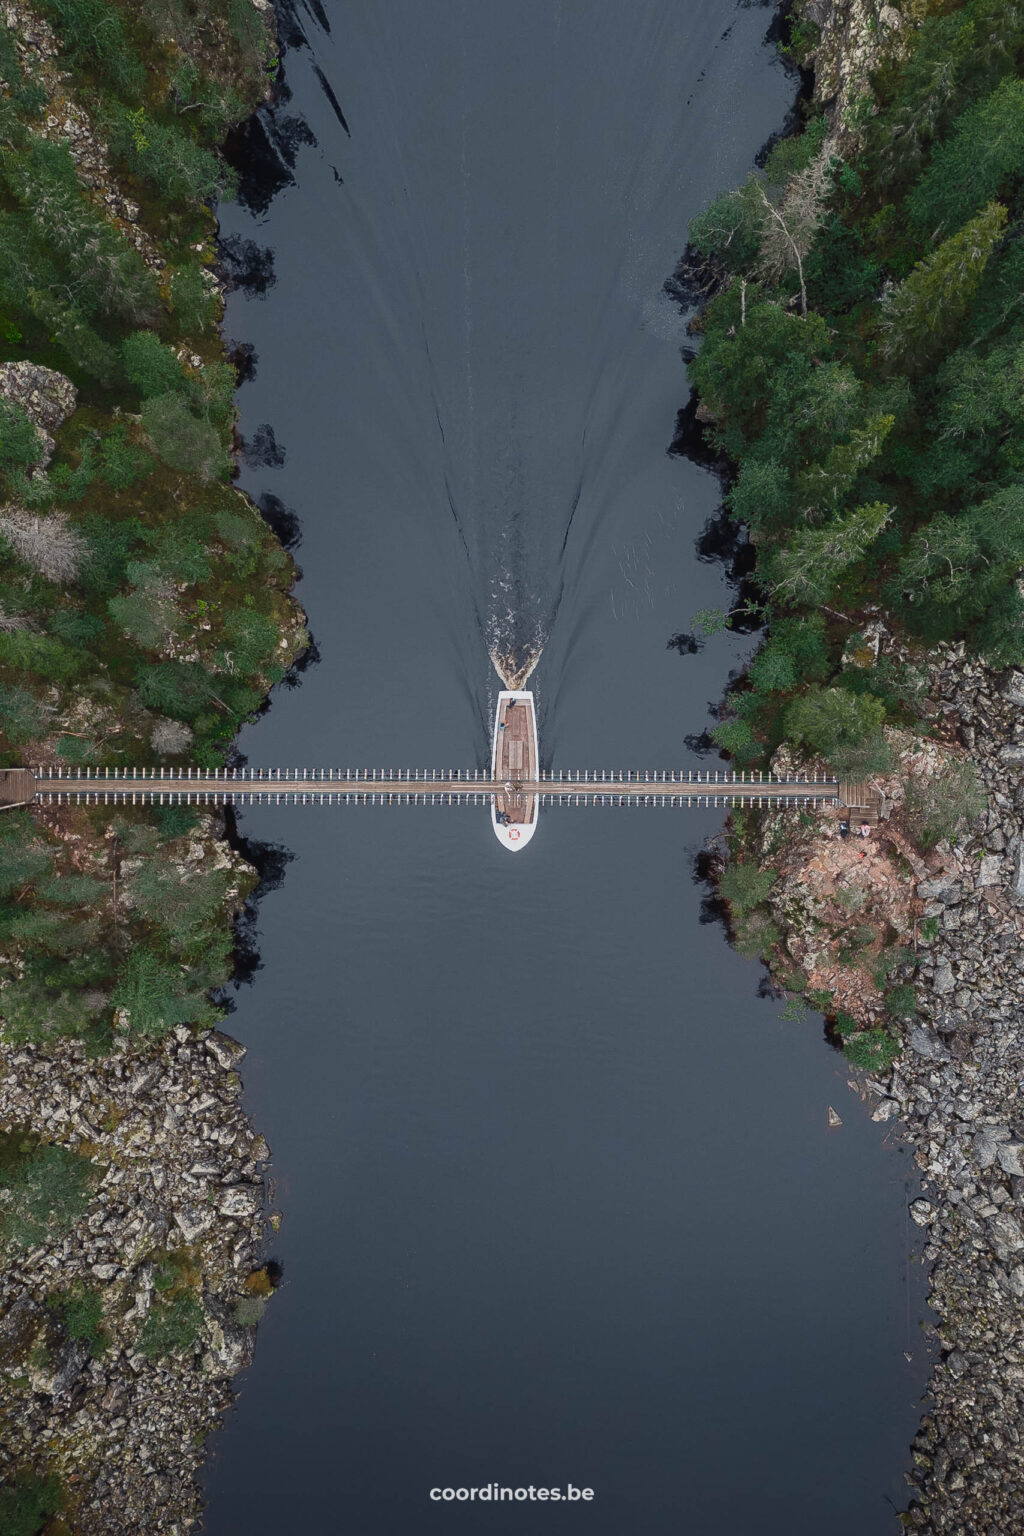 A boat crossing the Suspension Bridge at Julma-Ölkky in Finnish Lapland